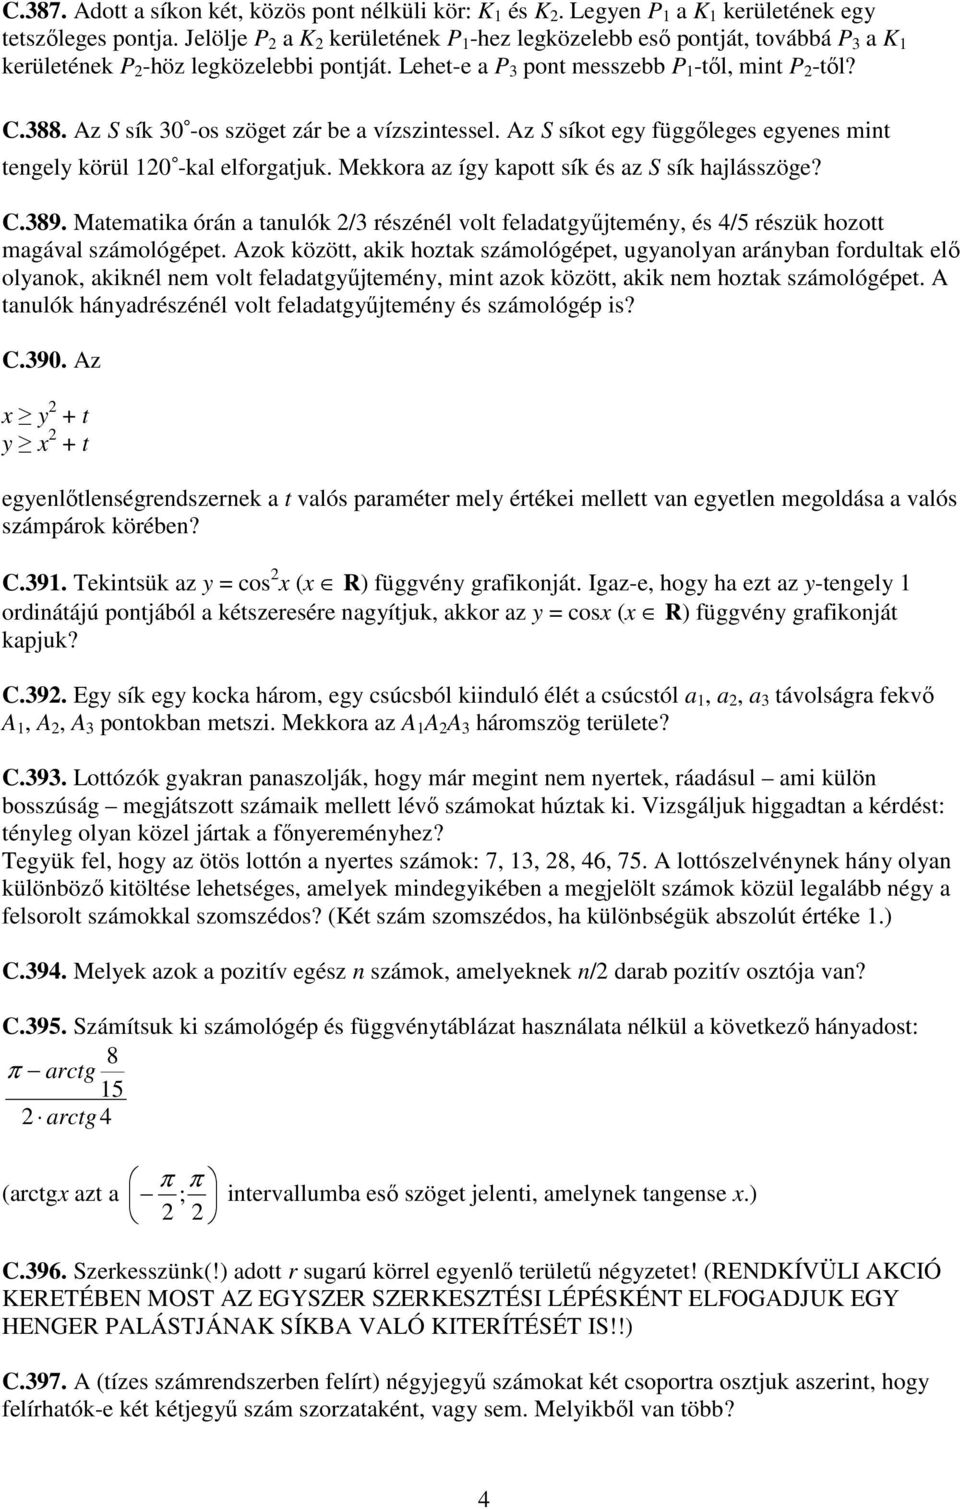 KöMaL C-gyakorlatok - PDF Ingyenes letöltés